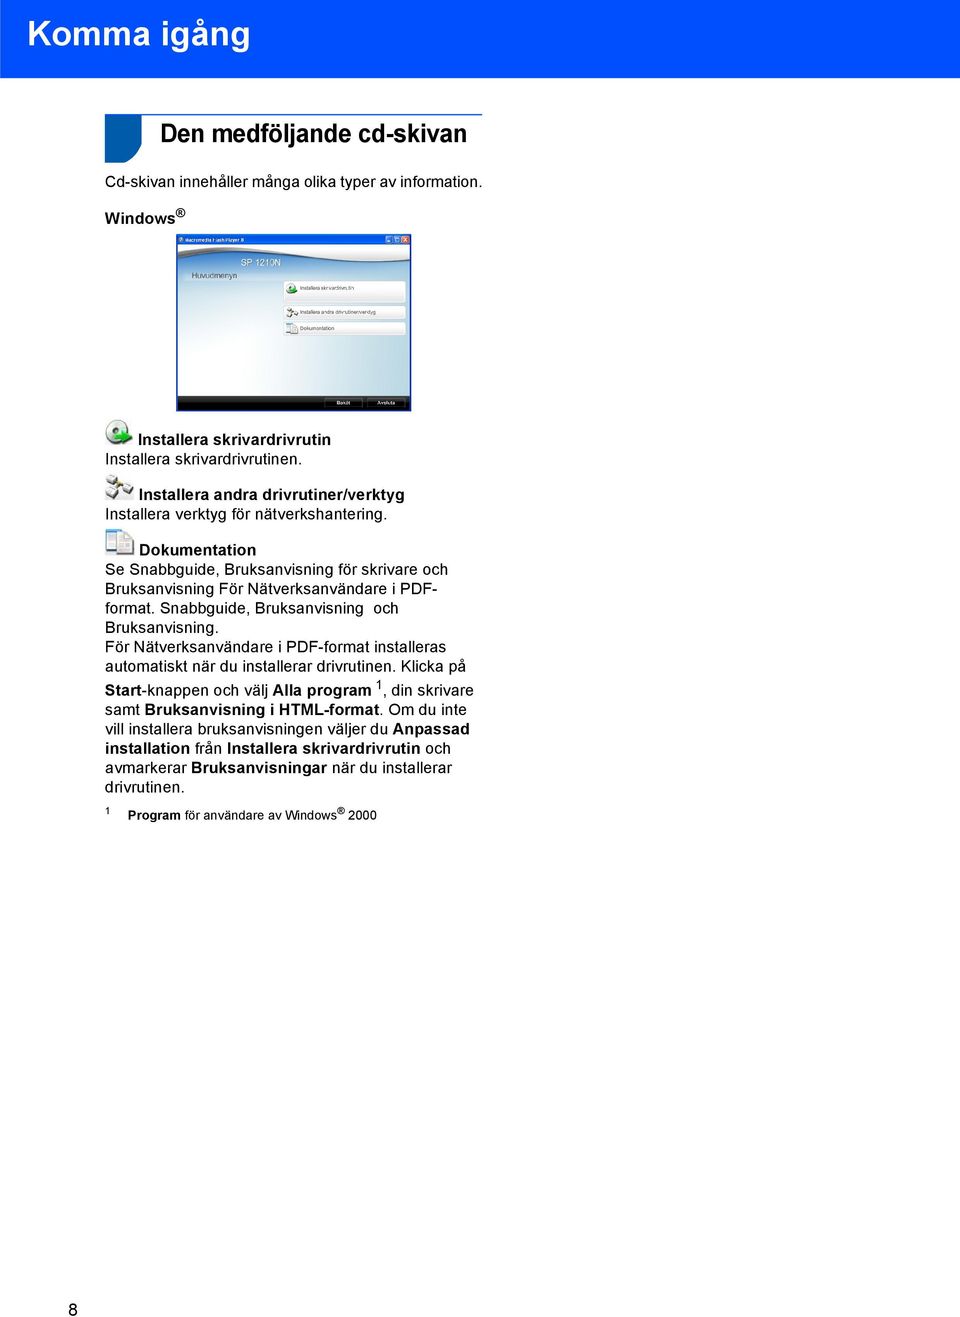 Snabbguide, Bruksanvisning och Bruksanvisning. För Nätverksanvändare i PDF-format installeras automatiskt när du installerar drivrutinen.